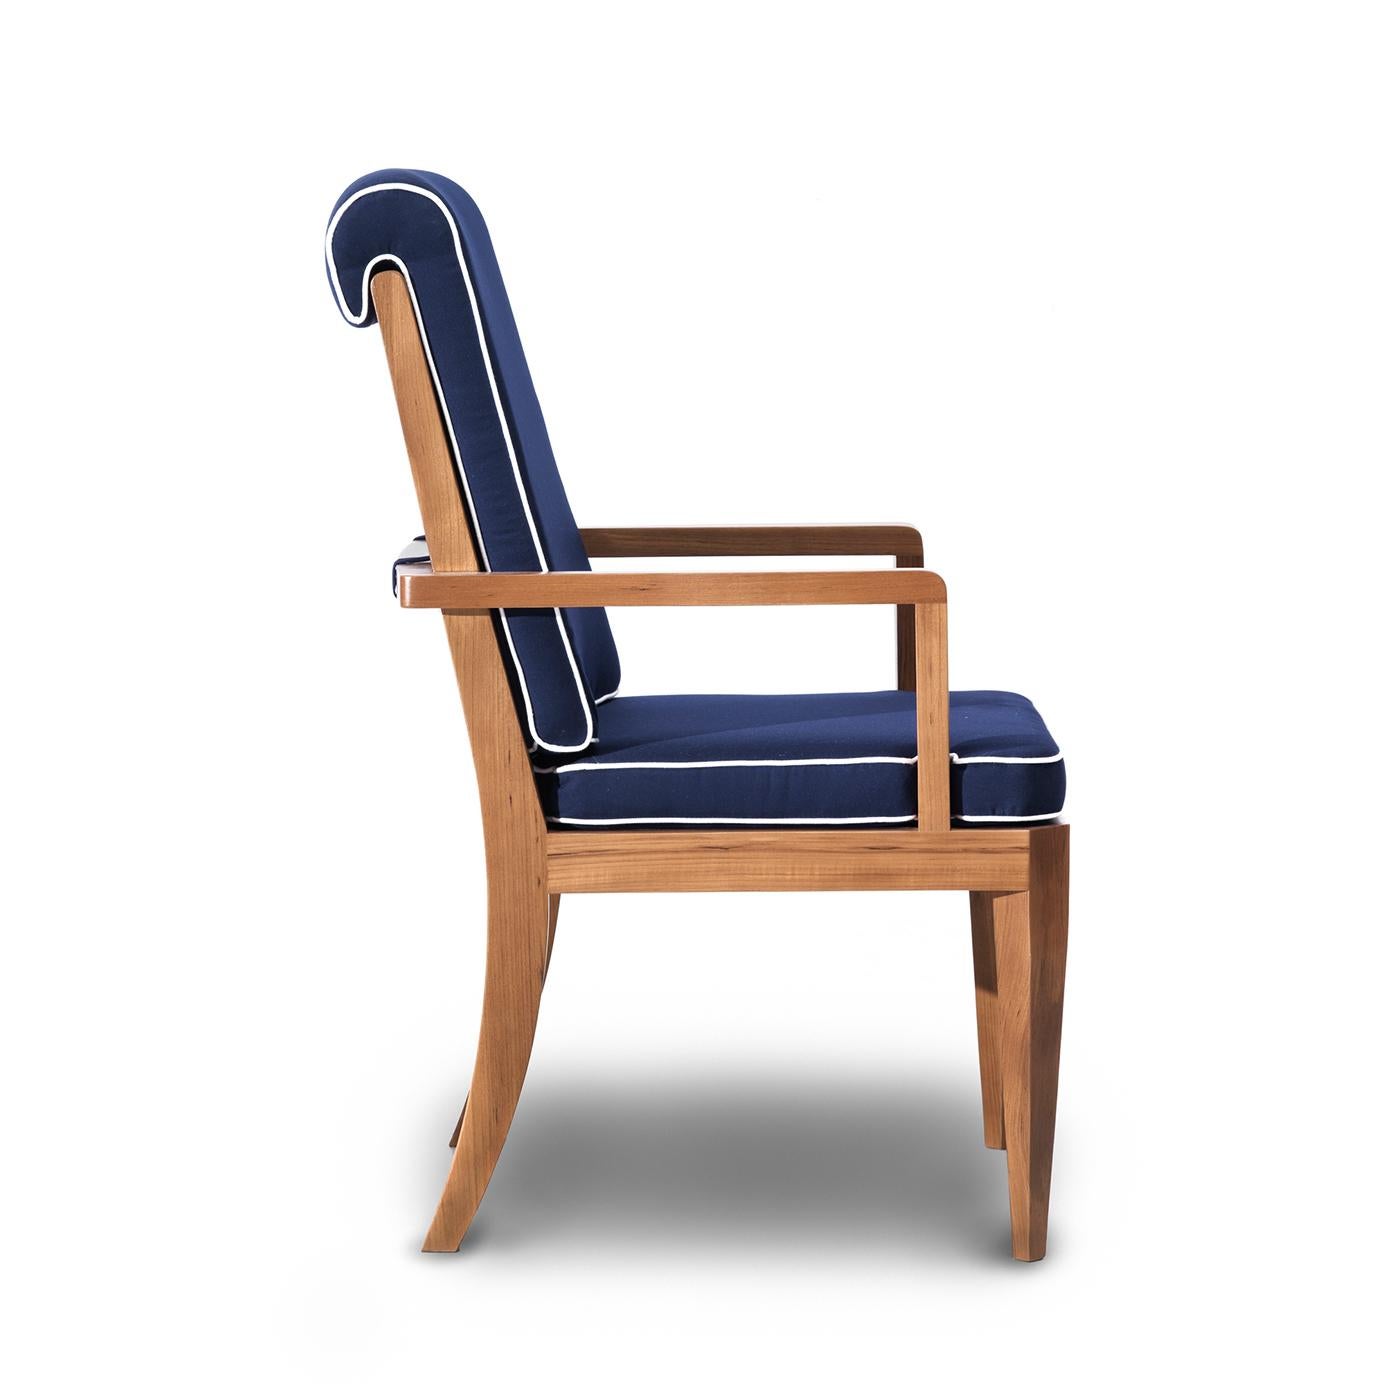 Dieser exklusive Sessel verbindet Langlebigkeit mit modernster Ästhetik und verfügt über ein massives Teakholzgestell in einem warmen Farbton. Das stabile Gestell besteht aus einer leicht geneigten Rückenlehne aus vertikalen Elementen, die von einer